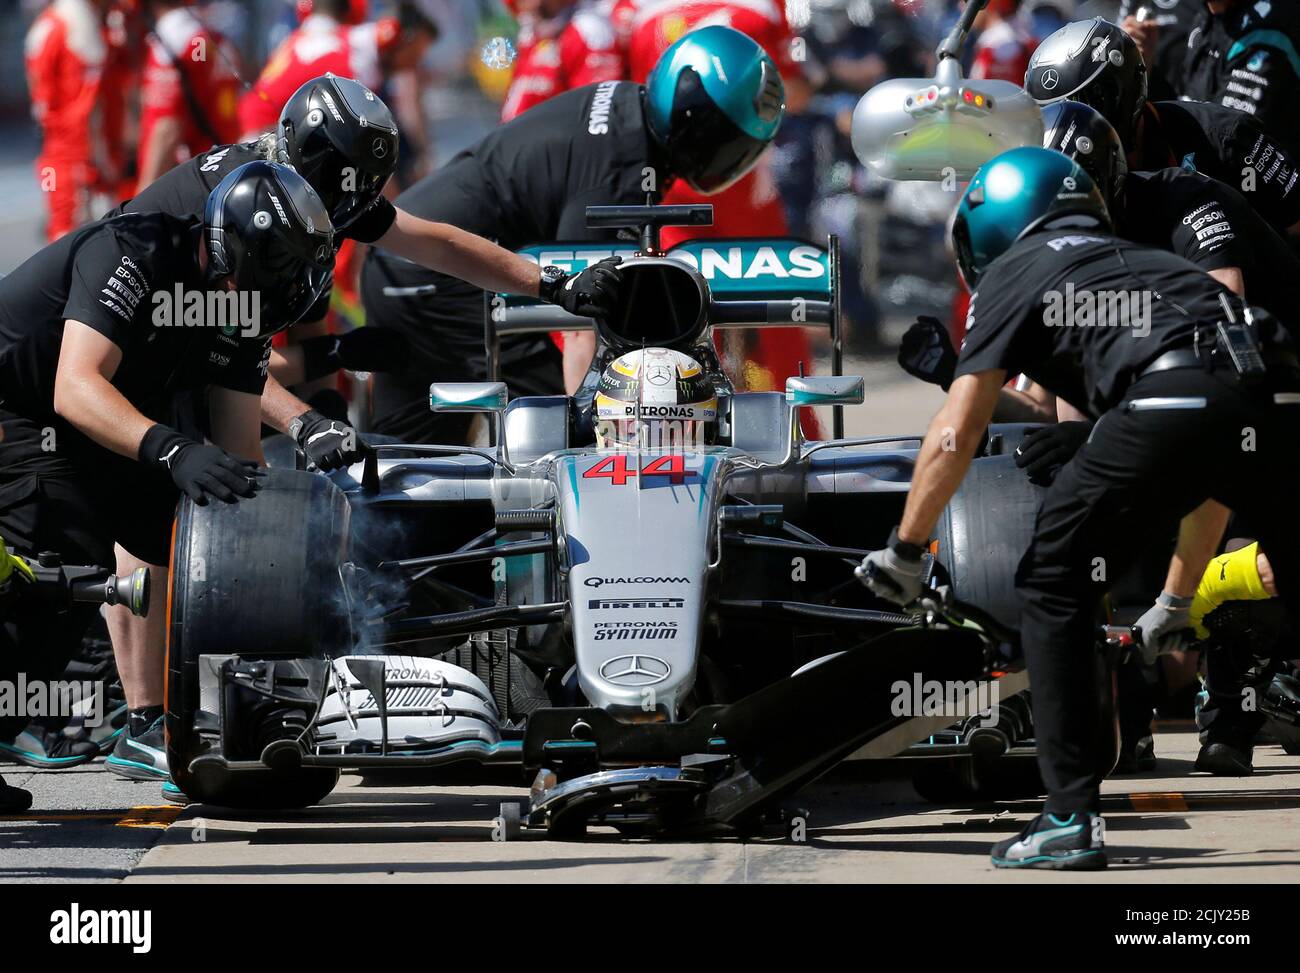 Formel 1 - Grand Prix von Kanada - Montreal, Quebec, Kanada - 06.10.16 - Mercedes F1-Fahrer Lewis Hamilton besucht die zweite Praxis. REUTERS/Chris Wattie Stockfoto